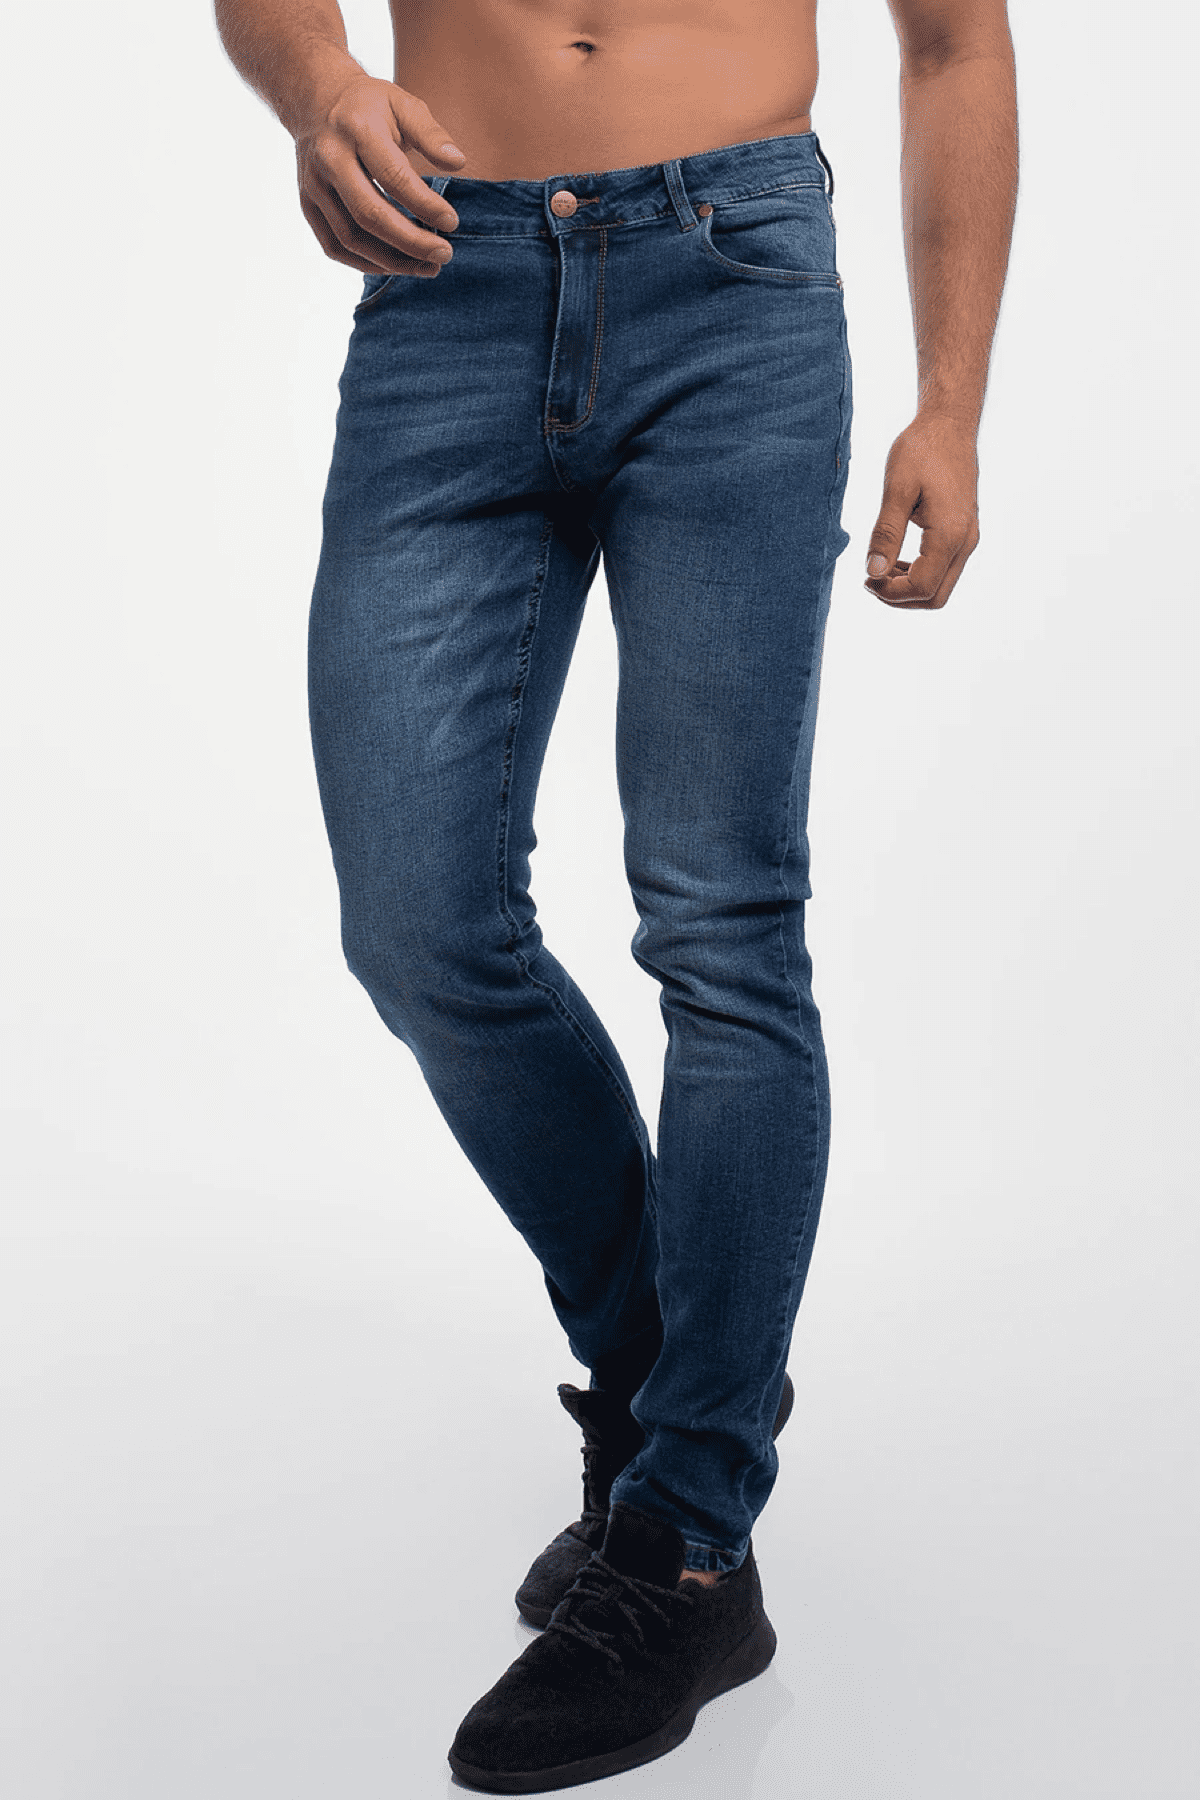 Forenkle Anklage køber Barbell Apparel Men's Slim Athletic Fit Jeans Medium Distressed 30 -  Walmart.com